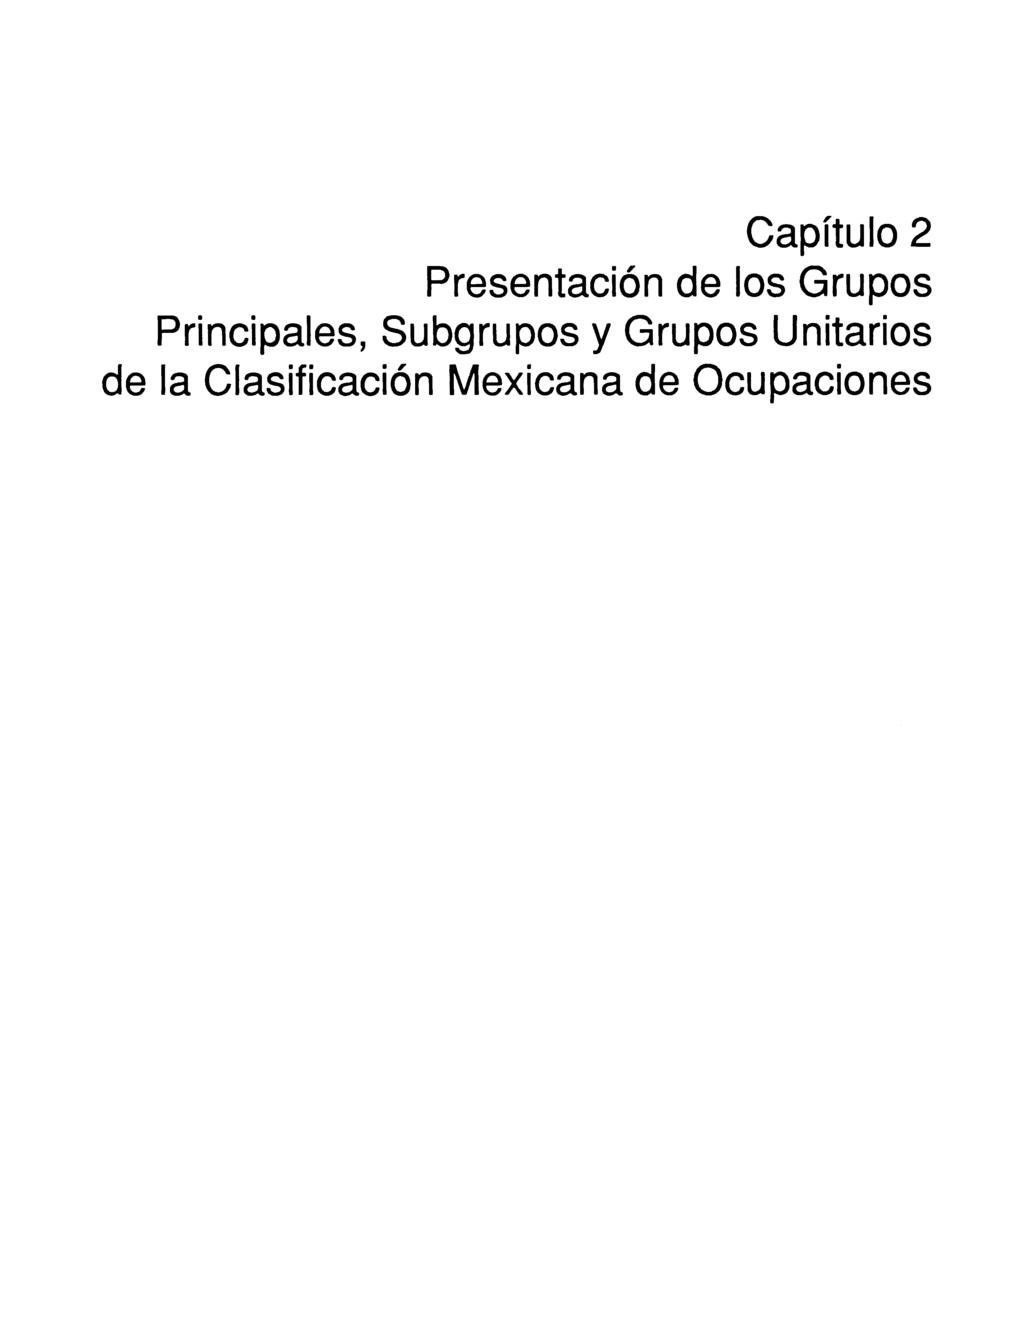 Capítulo 2 Presentación de los Grupos Principales, Subgrupos